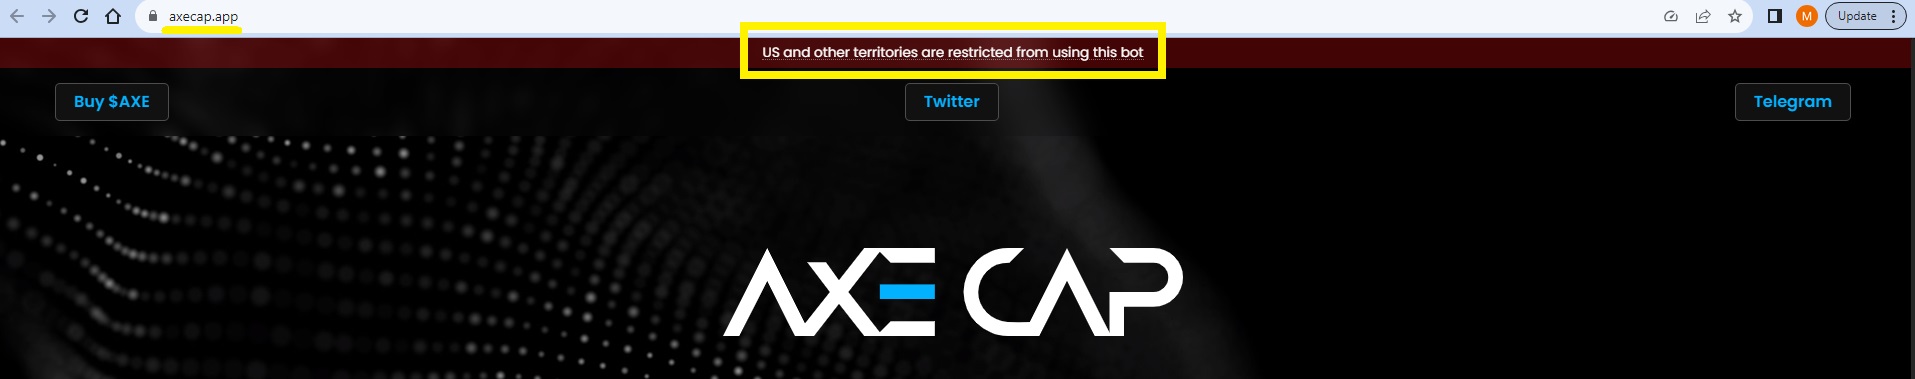 Axe Cap Crypto app website landing page